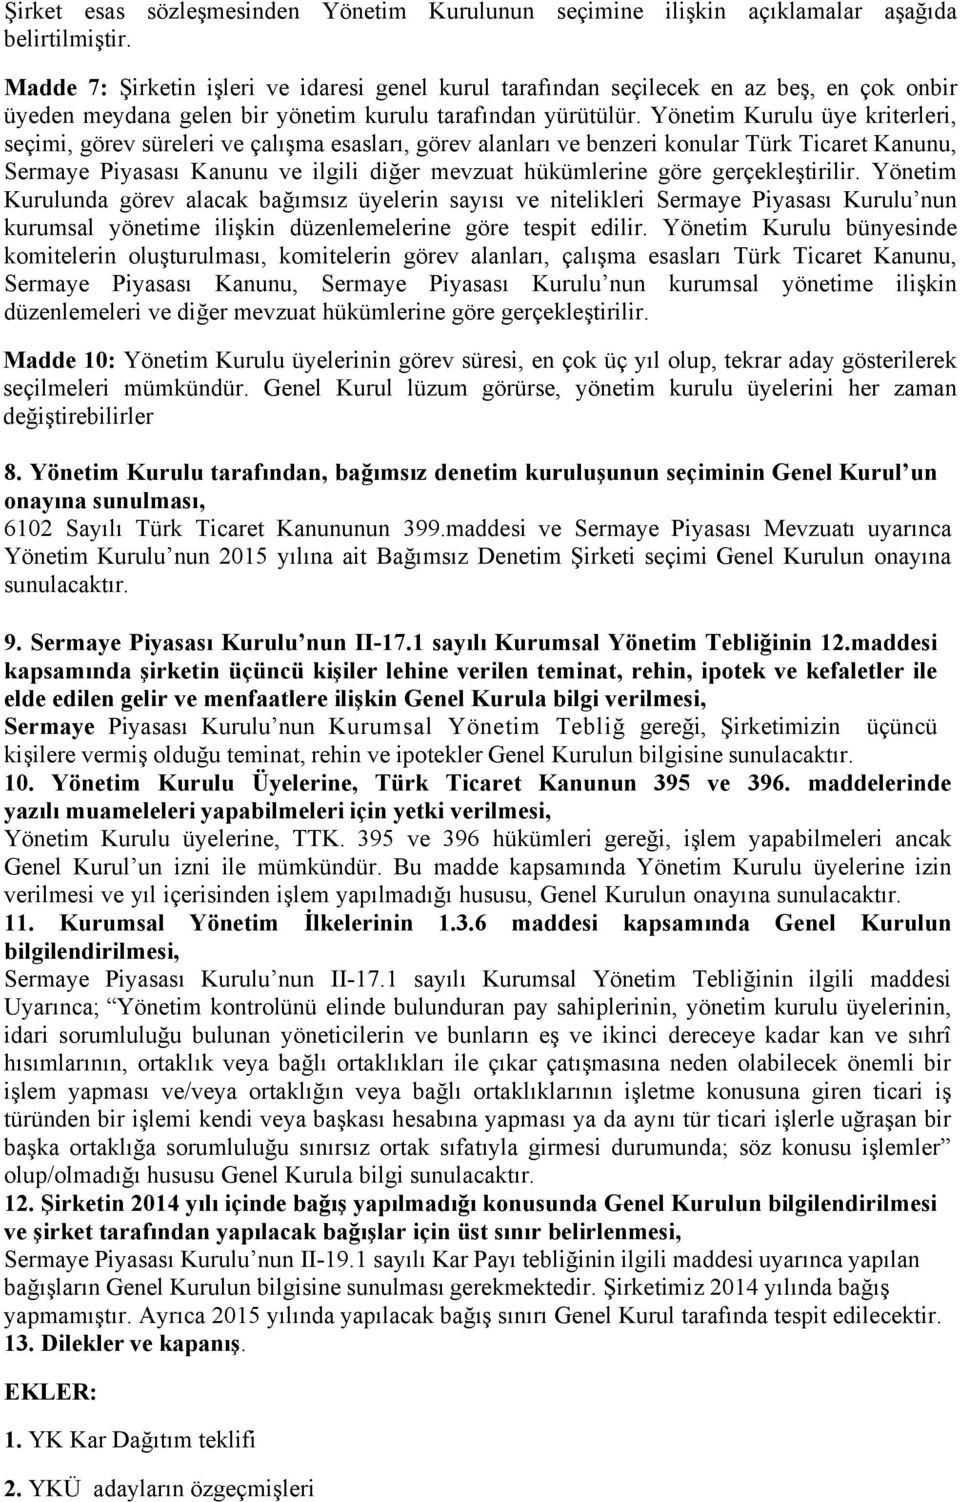 Yönetim Kurulu üye kriterleri, seçimi, görev süreleri ve çalışma esasları, görev alanları ve benzeri konular Türk Ticaret Kanunu, Sermaye Piyasası Kanunu ve ilgili diğer mevzuat hükümlerine göre